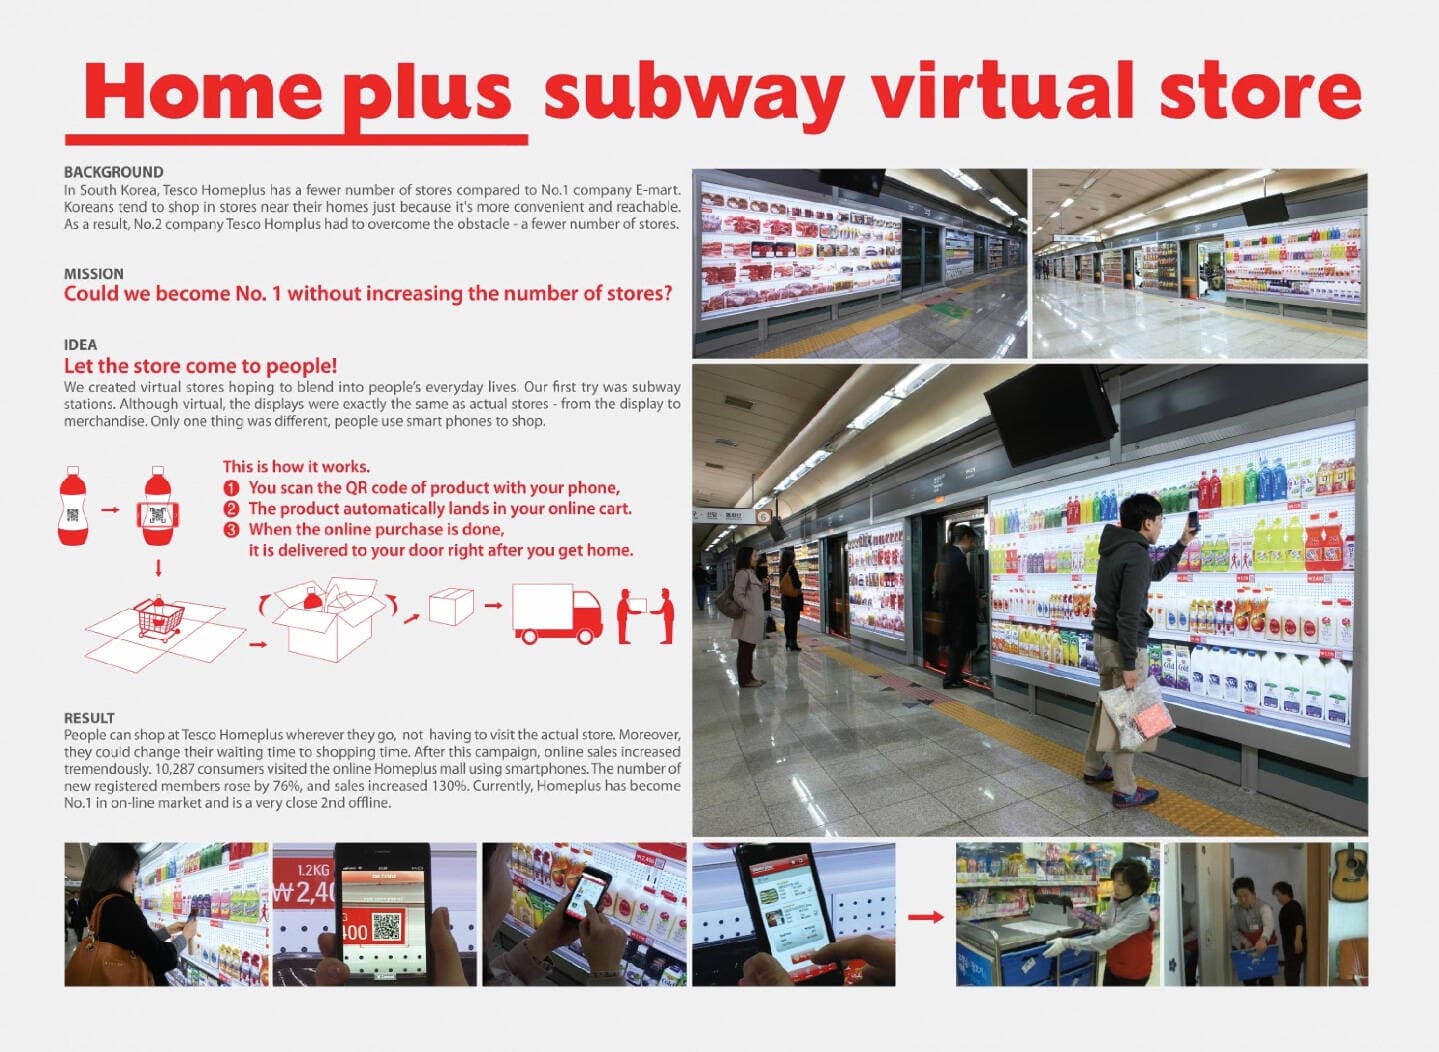 Quảng cáo của Subway Virtual Store